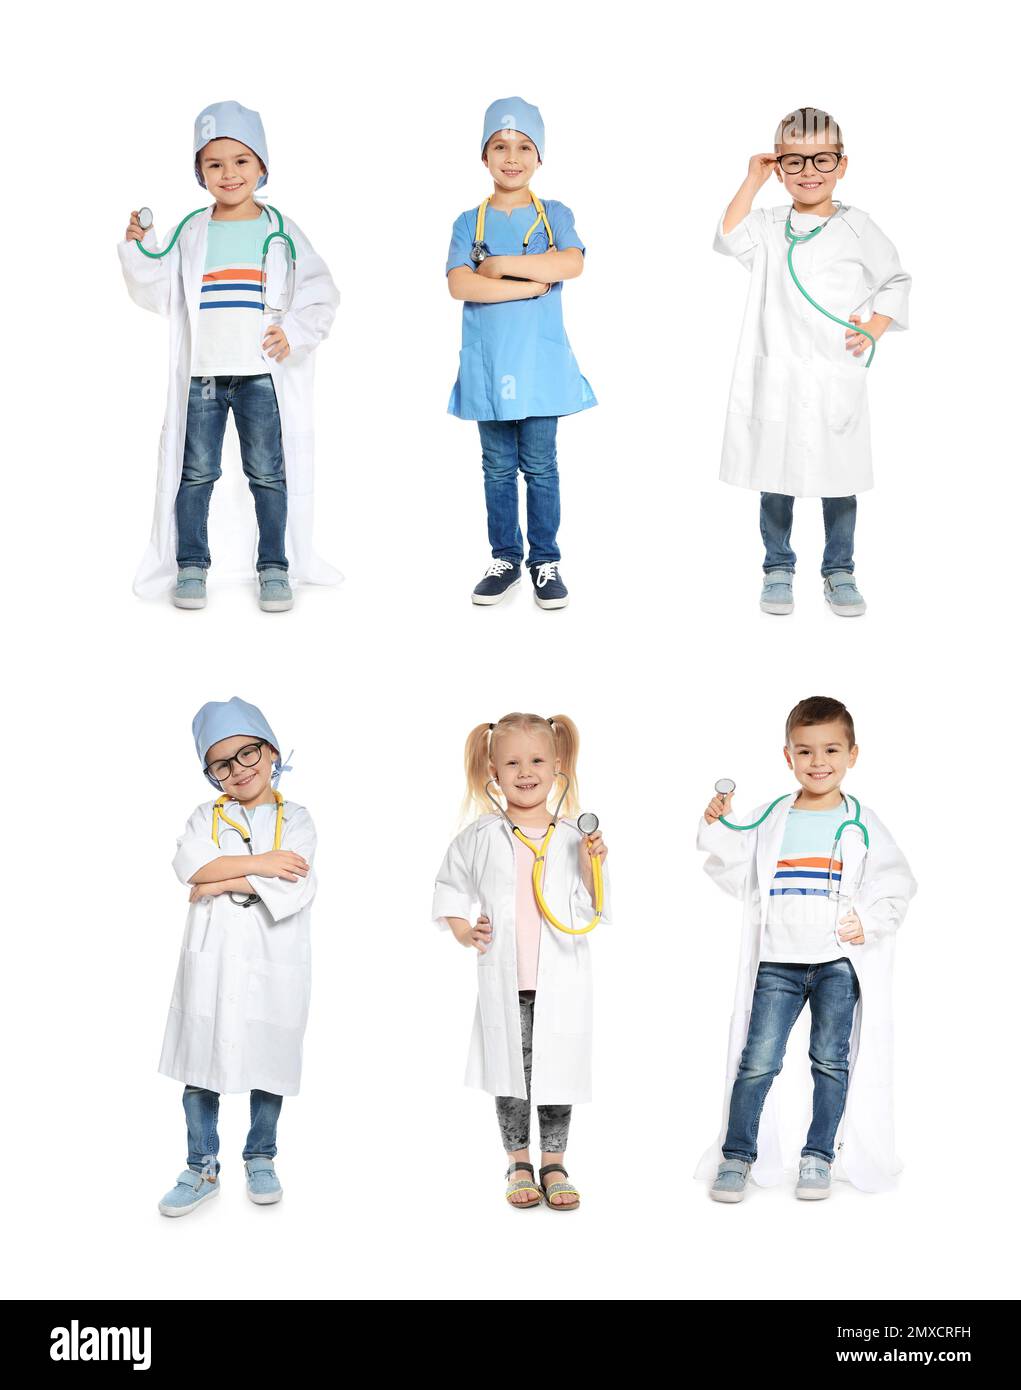 Collage de petits enfants mignons portant des costumes d'uniforme de médecin jouant sur fond blanc Banque D'Images